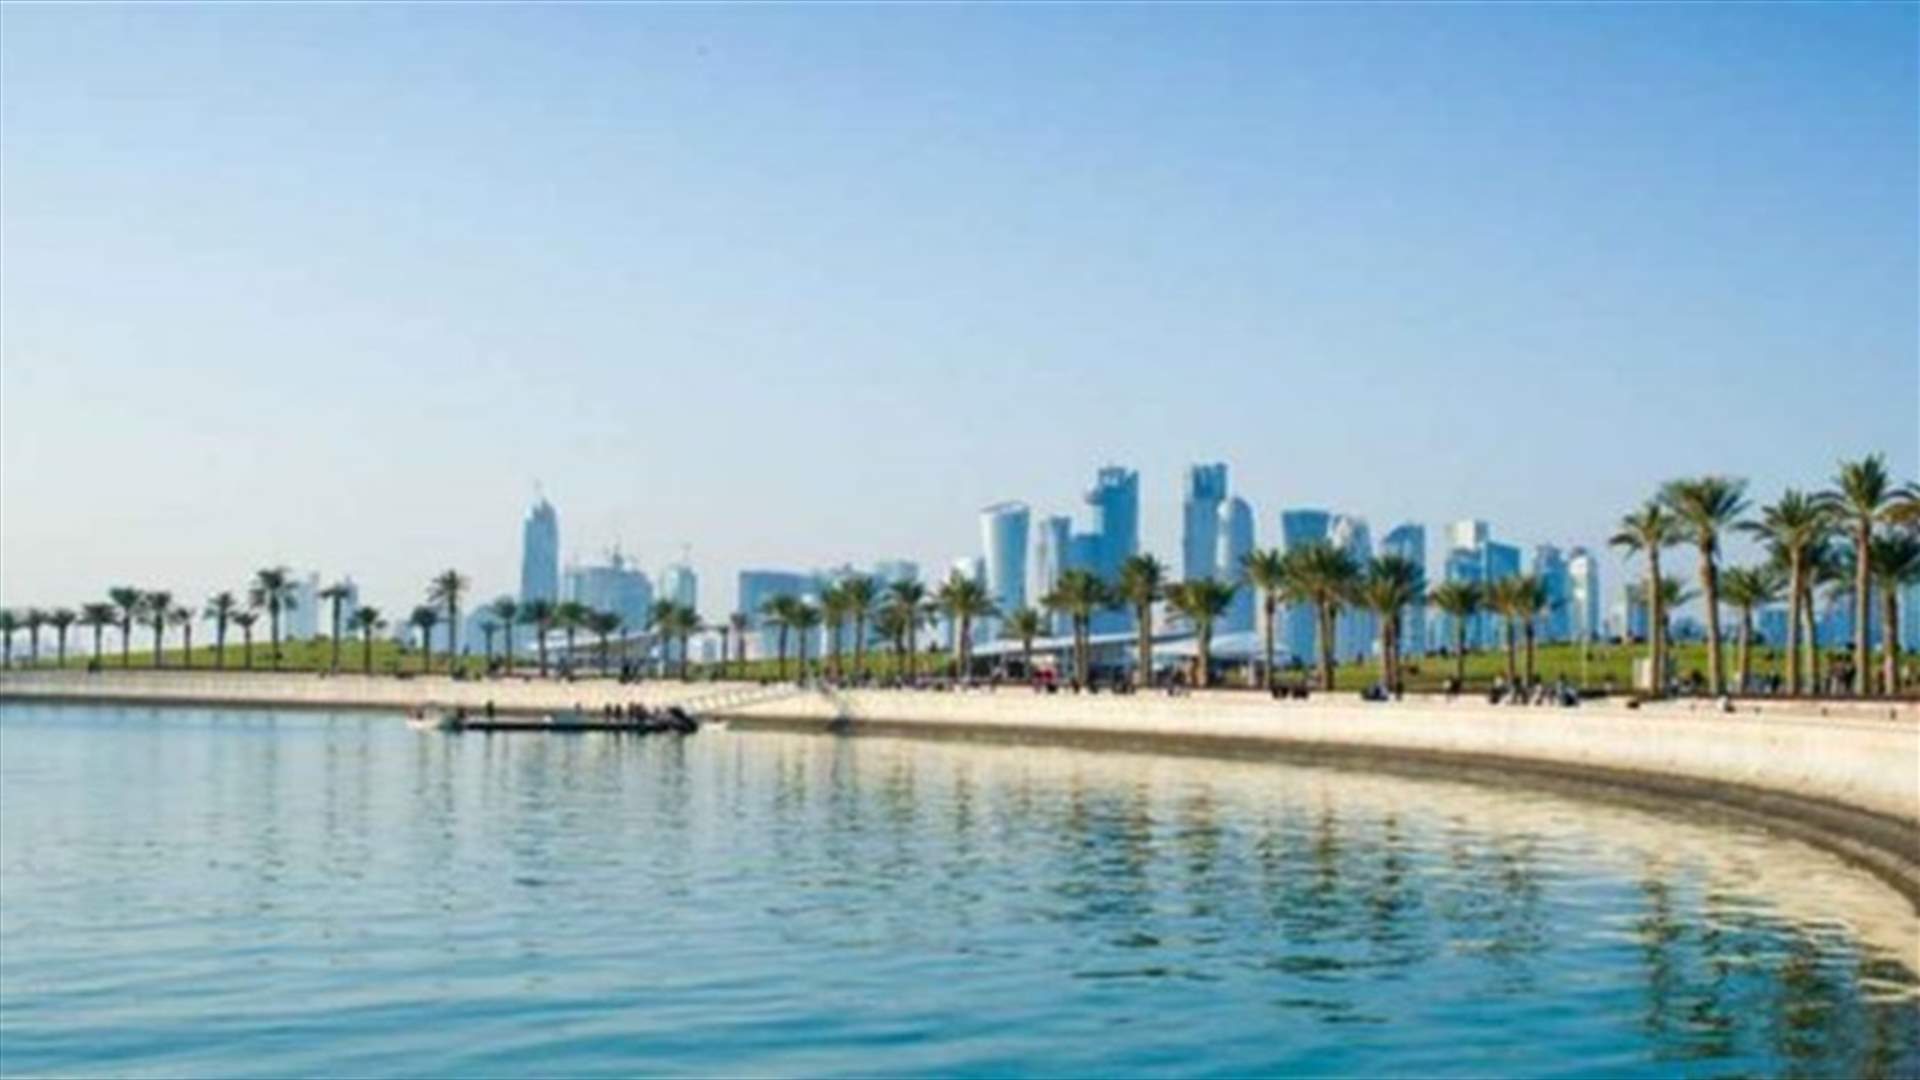 قطر تعيد فتح الشواطئ بعد أشهر من إغلاقها لمحاربة كورونا